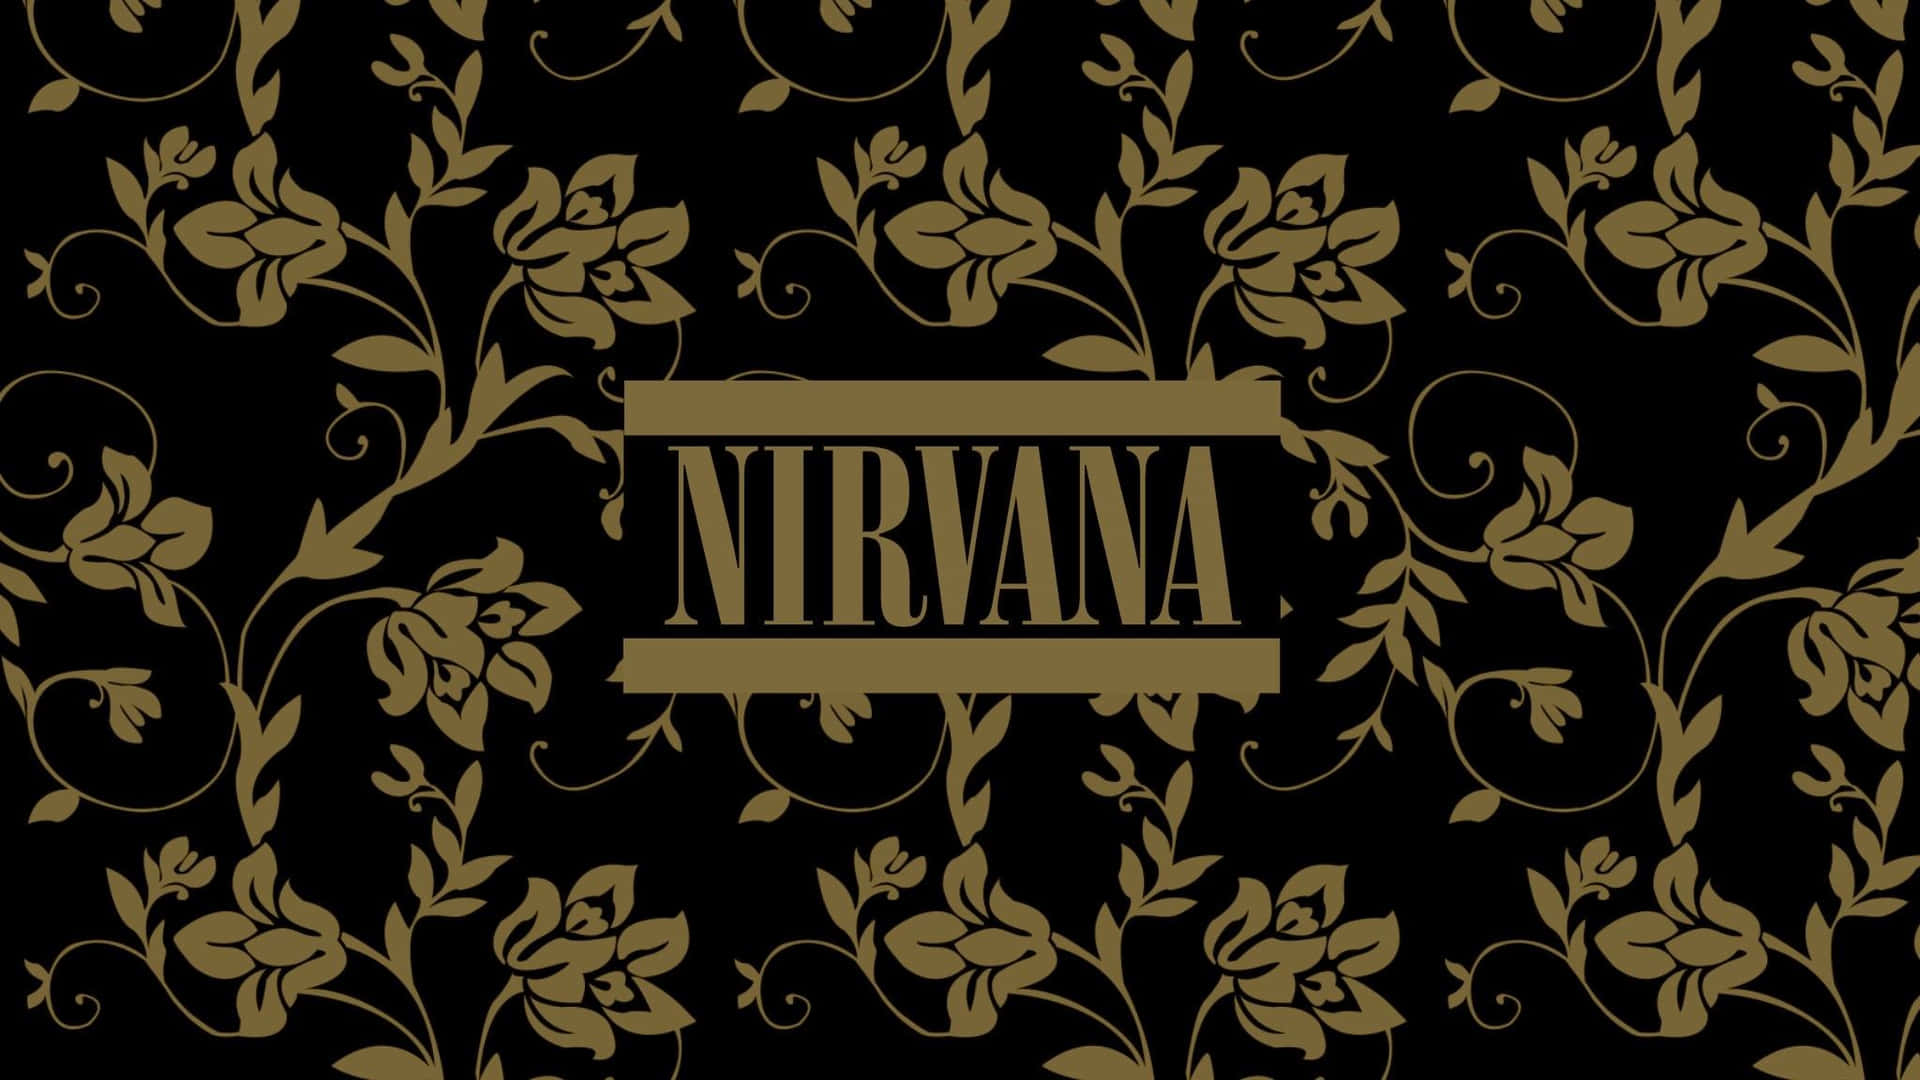 Grunge Aesthetic Nirvana For Mac Wallpaper